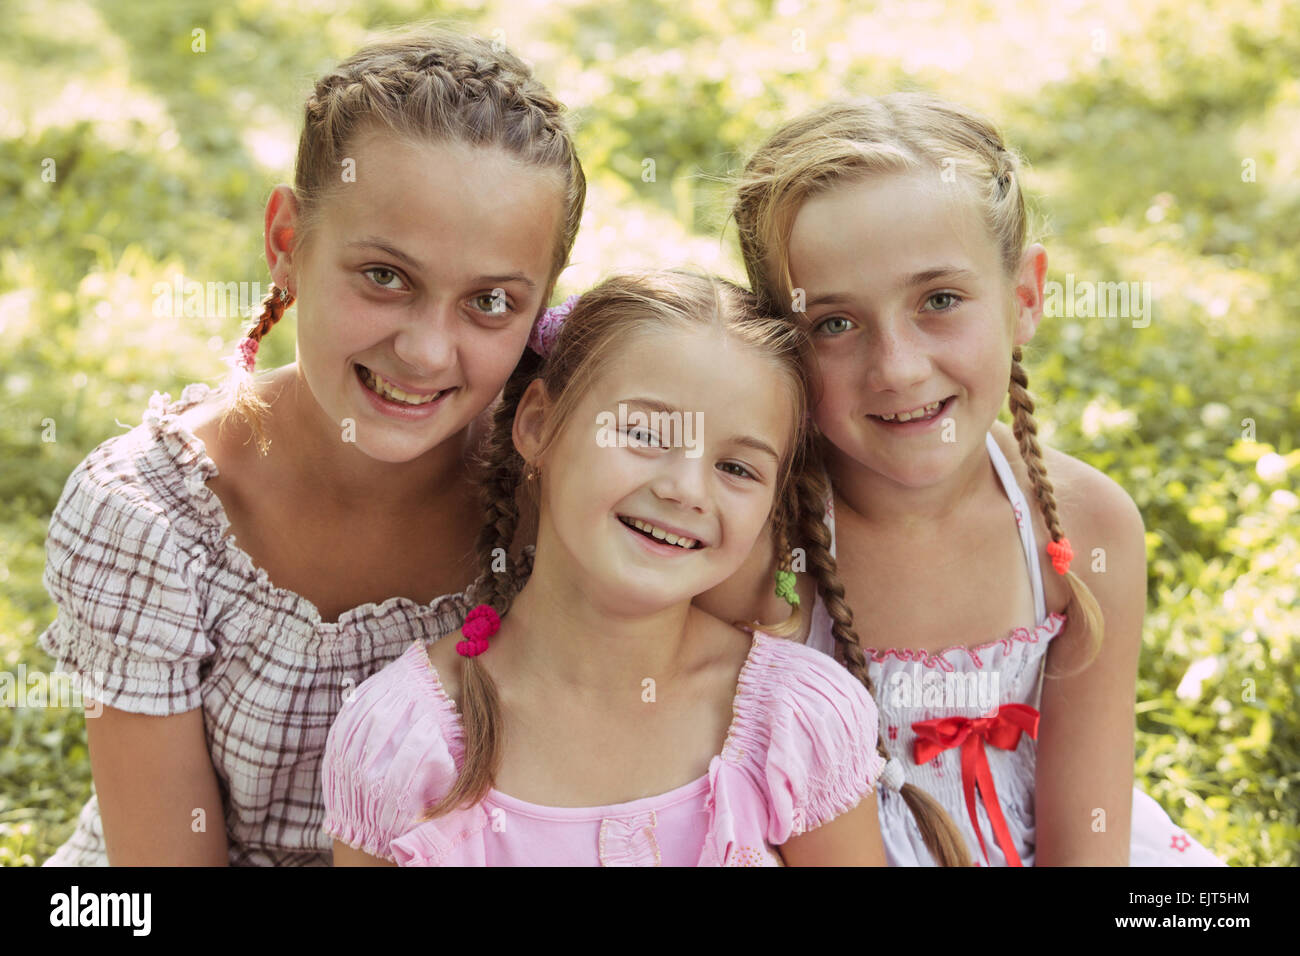 Three girls Stock Photo